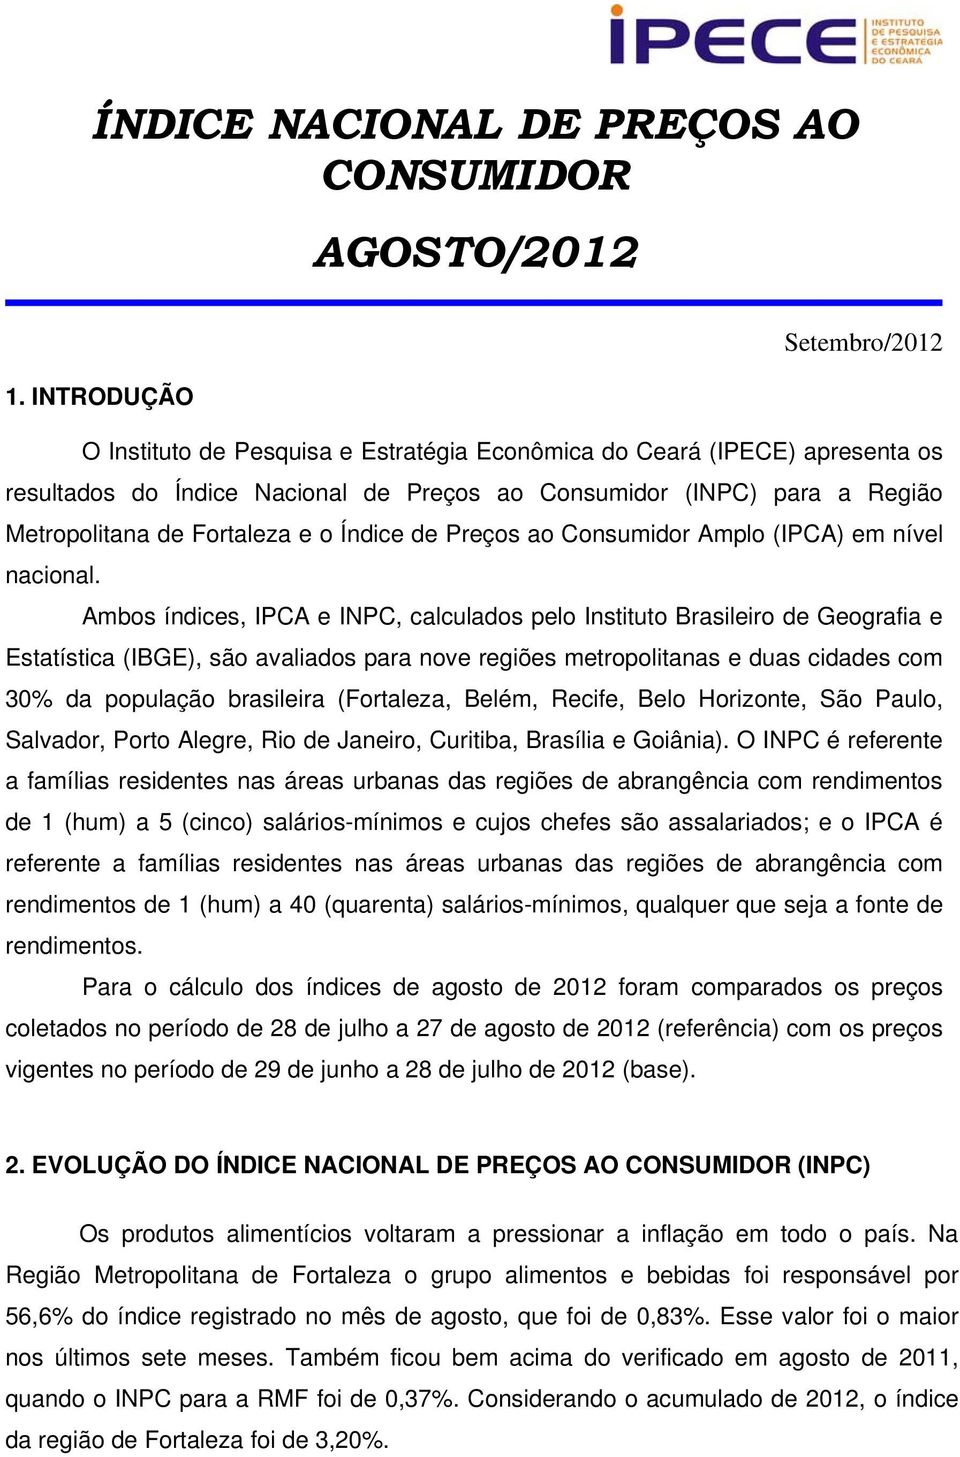 Ambos índices, IPCA e INPC, calculados pelo Instituto Brasileiro de Geografia e Estatística (IBGE), são avaliados para nove regiões metropolitanas e duas cidades com 30% da população brasileira